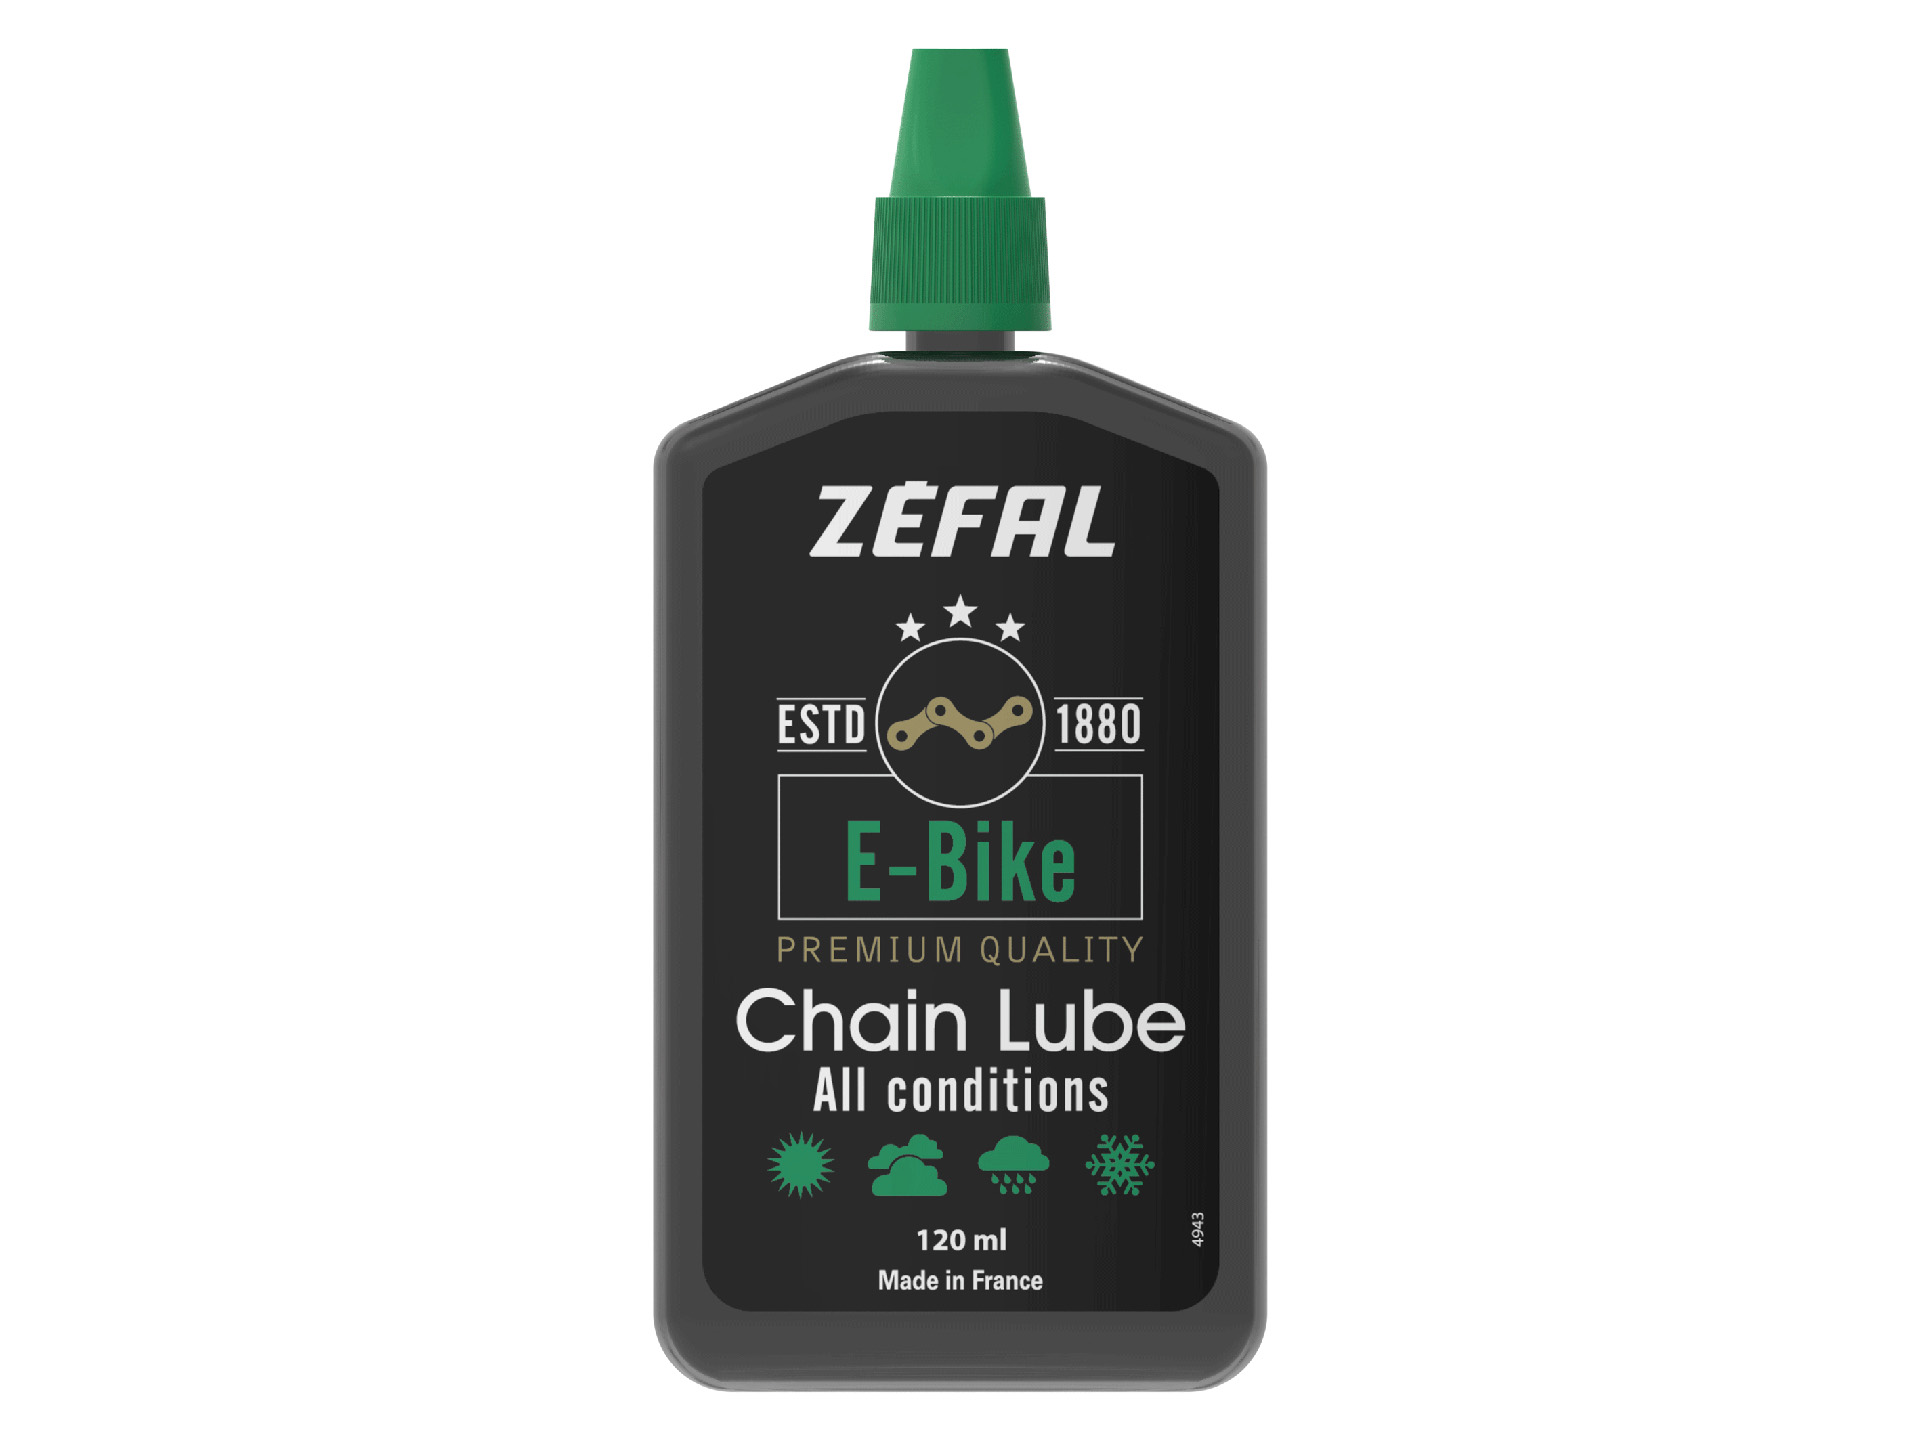 Zefal 電動單車專用全天候鏈油 120ml *法國製造